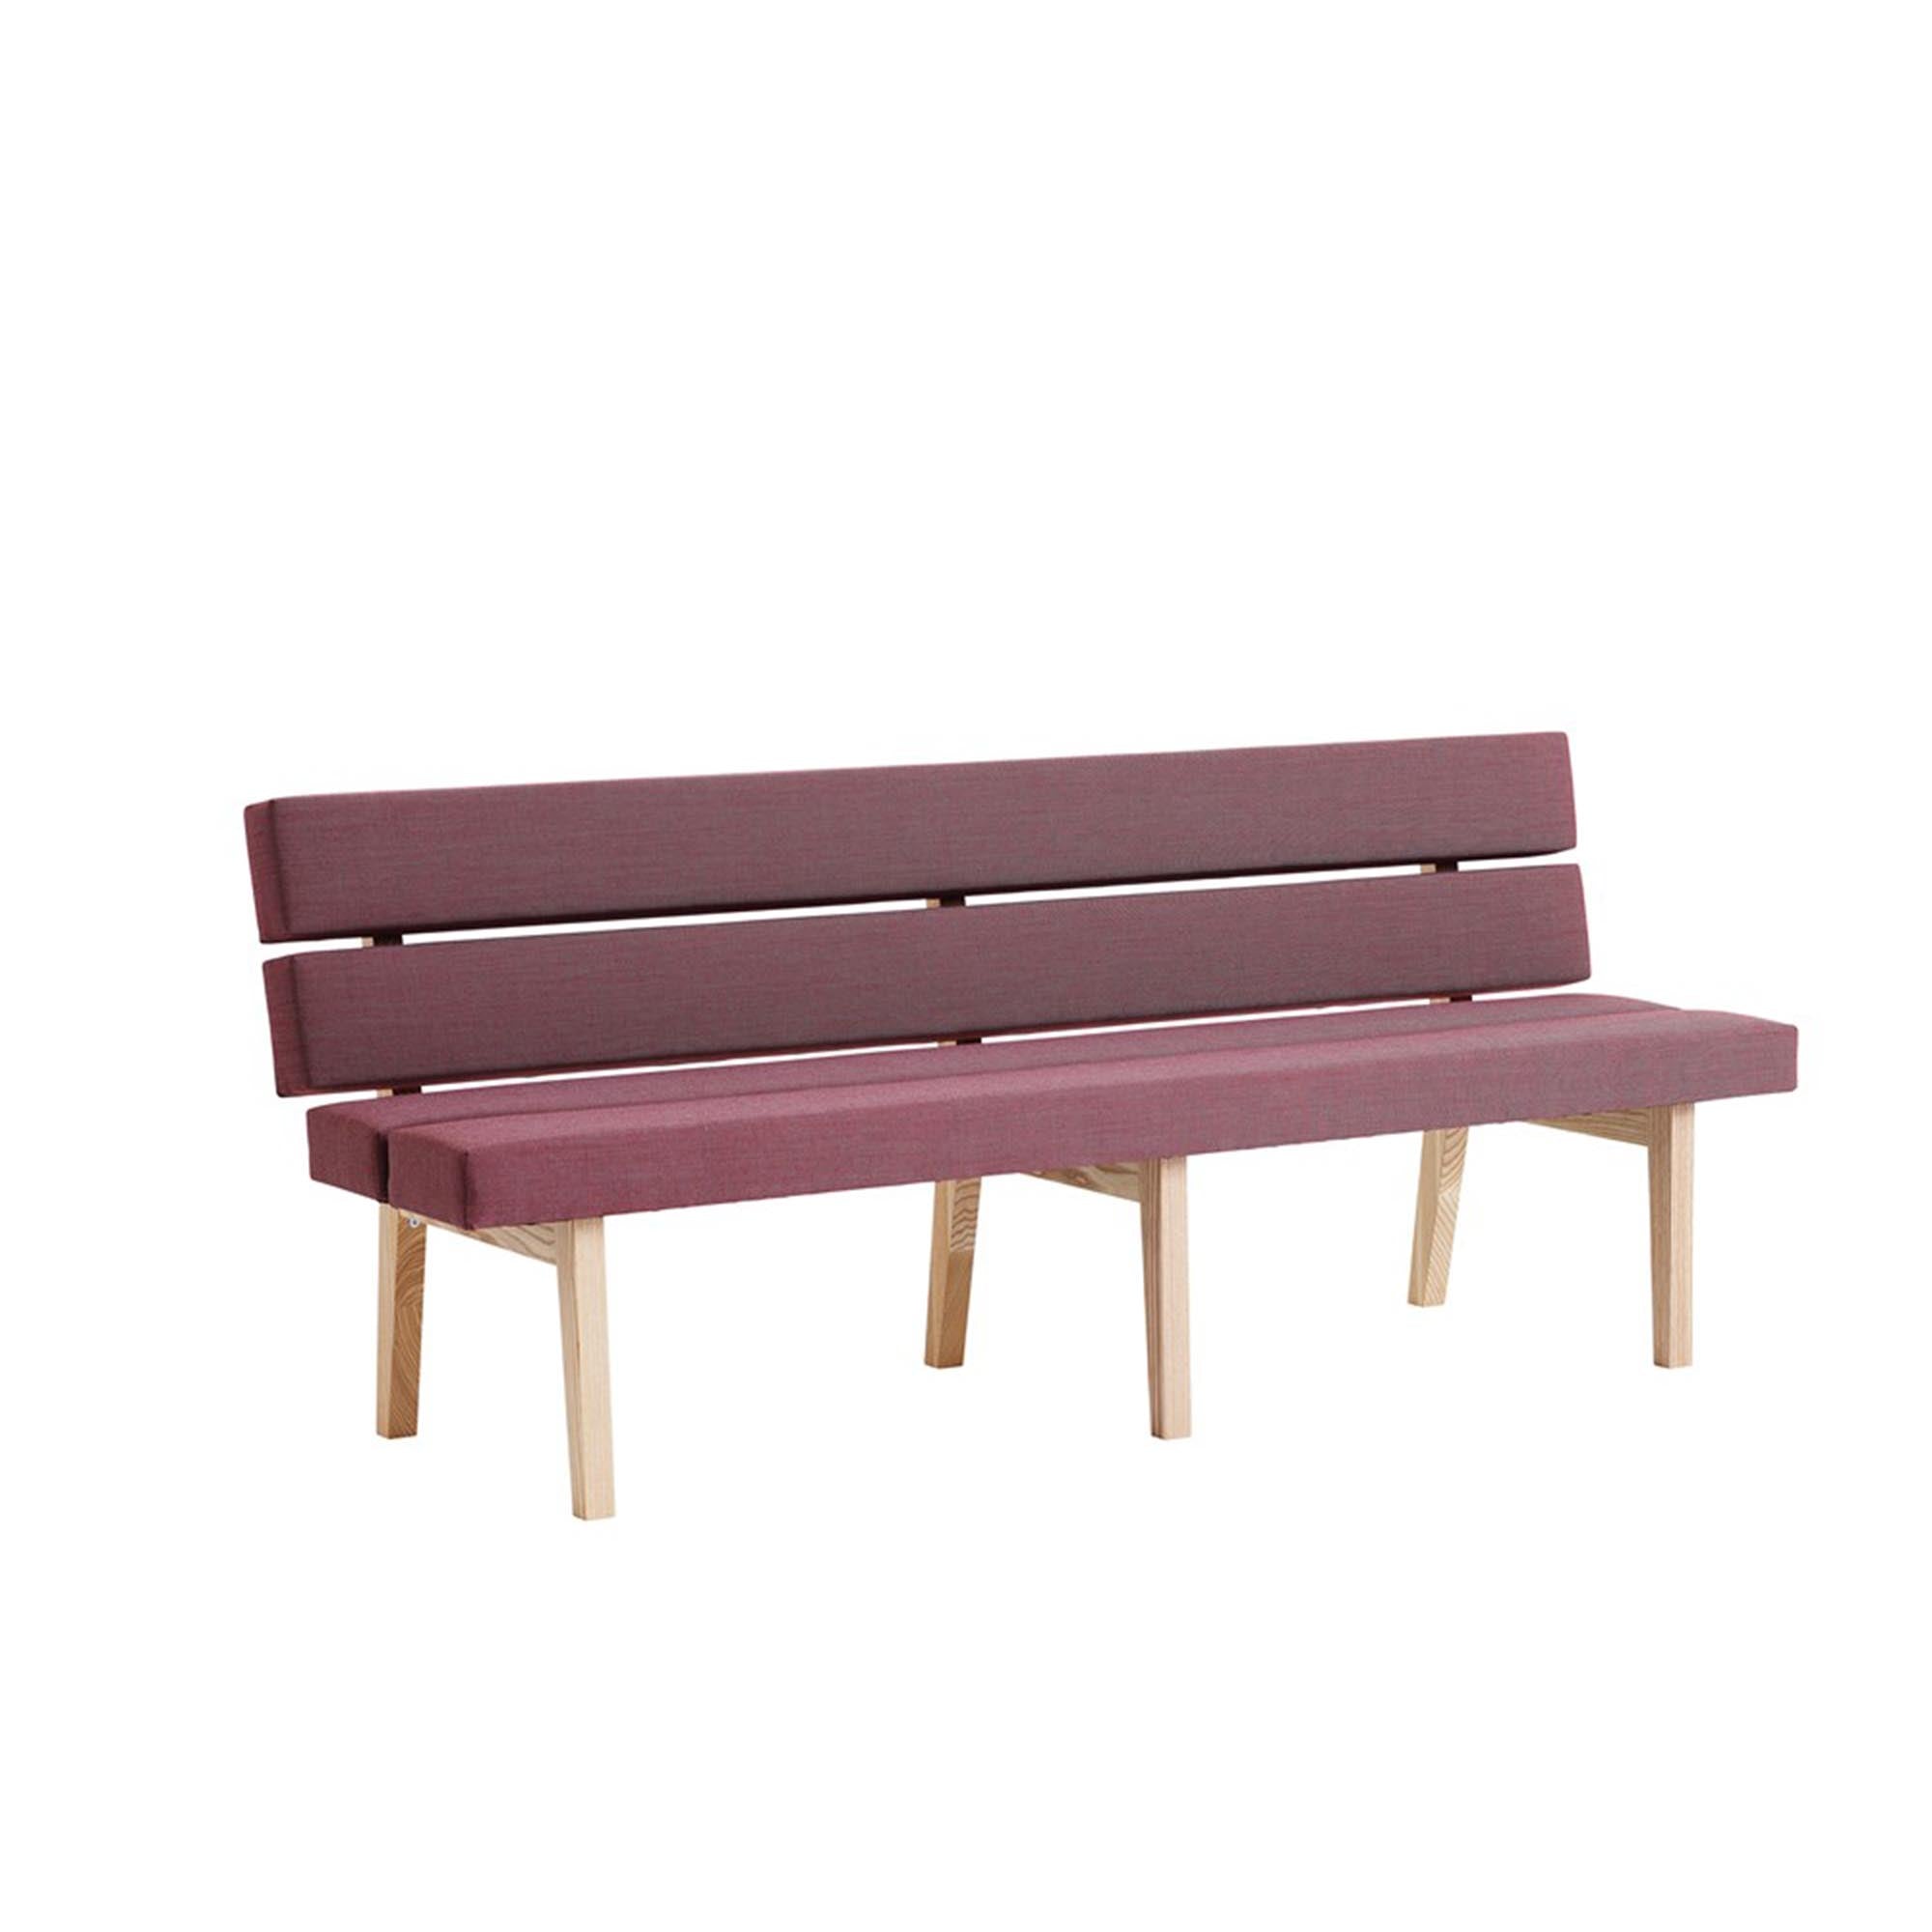 KAMON DINNER Bench purple upholstery, natural frame 195 cm